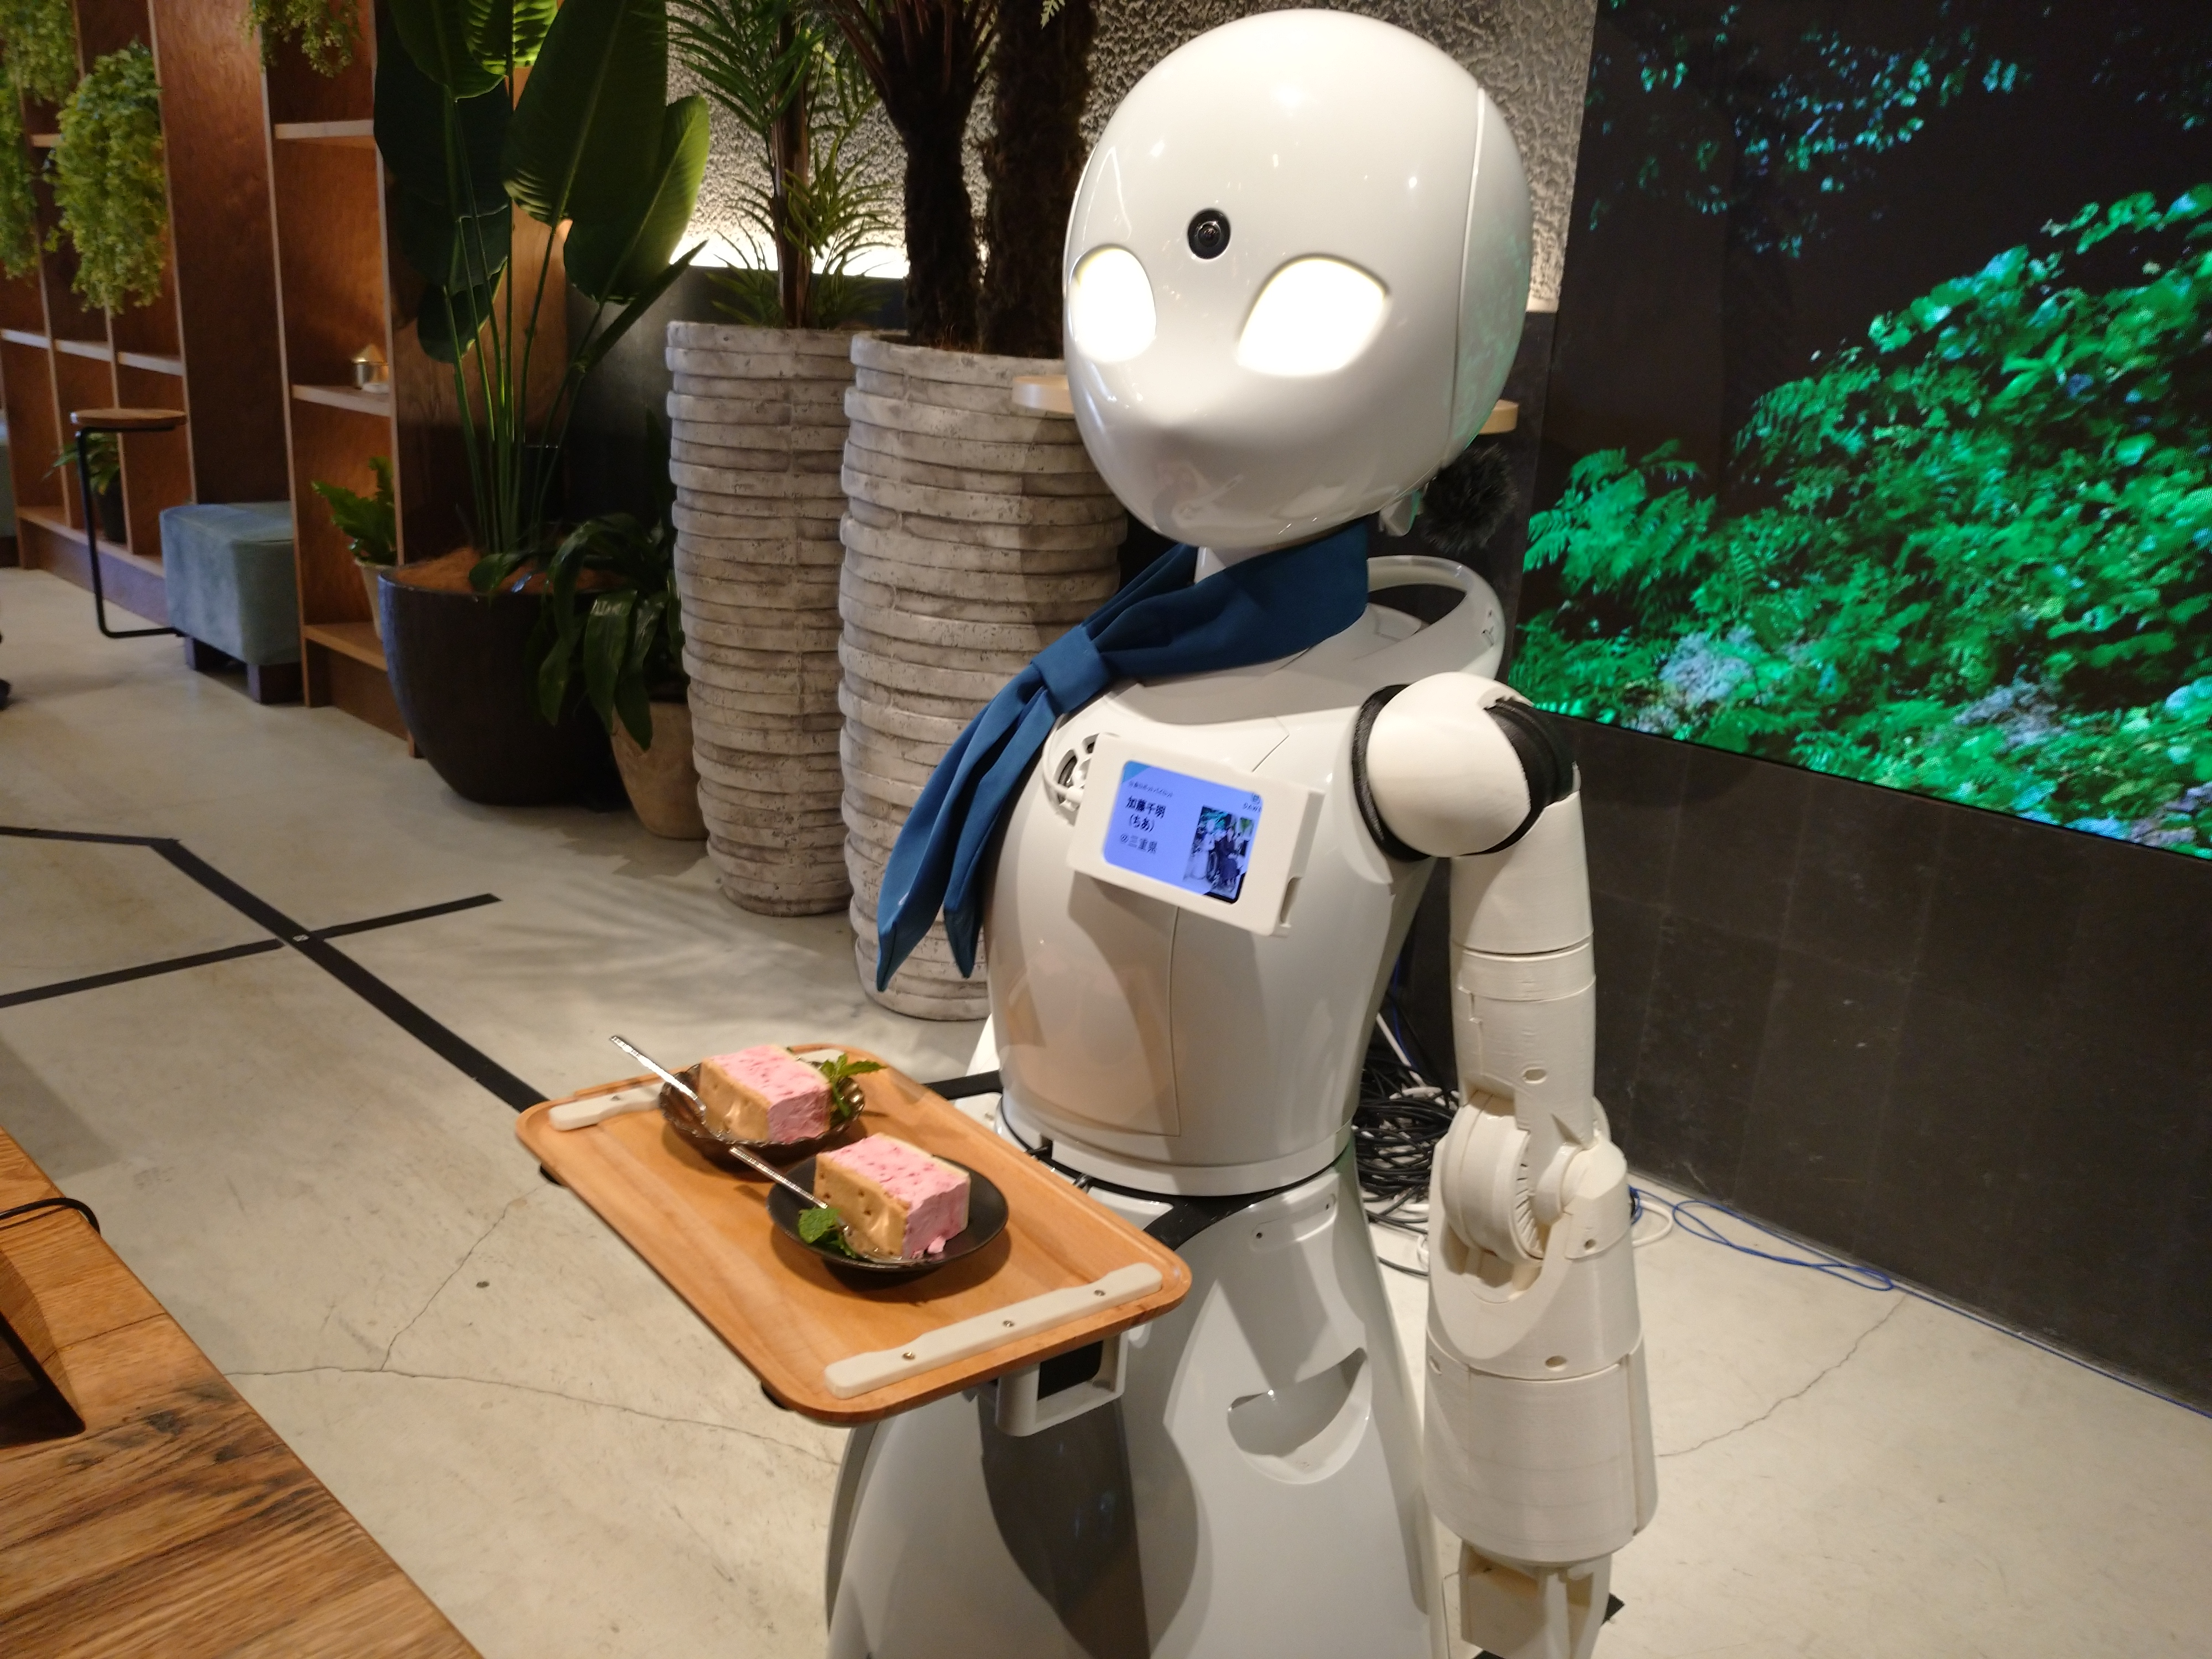 分身ロボカフェ Avatar Robot Cafe に行ってきました！